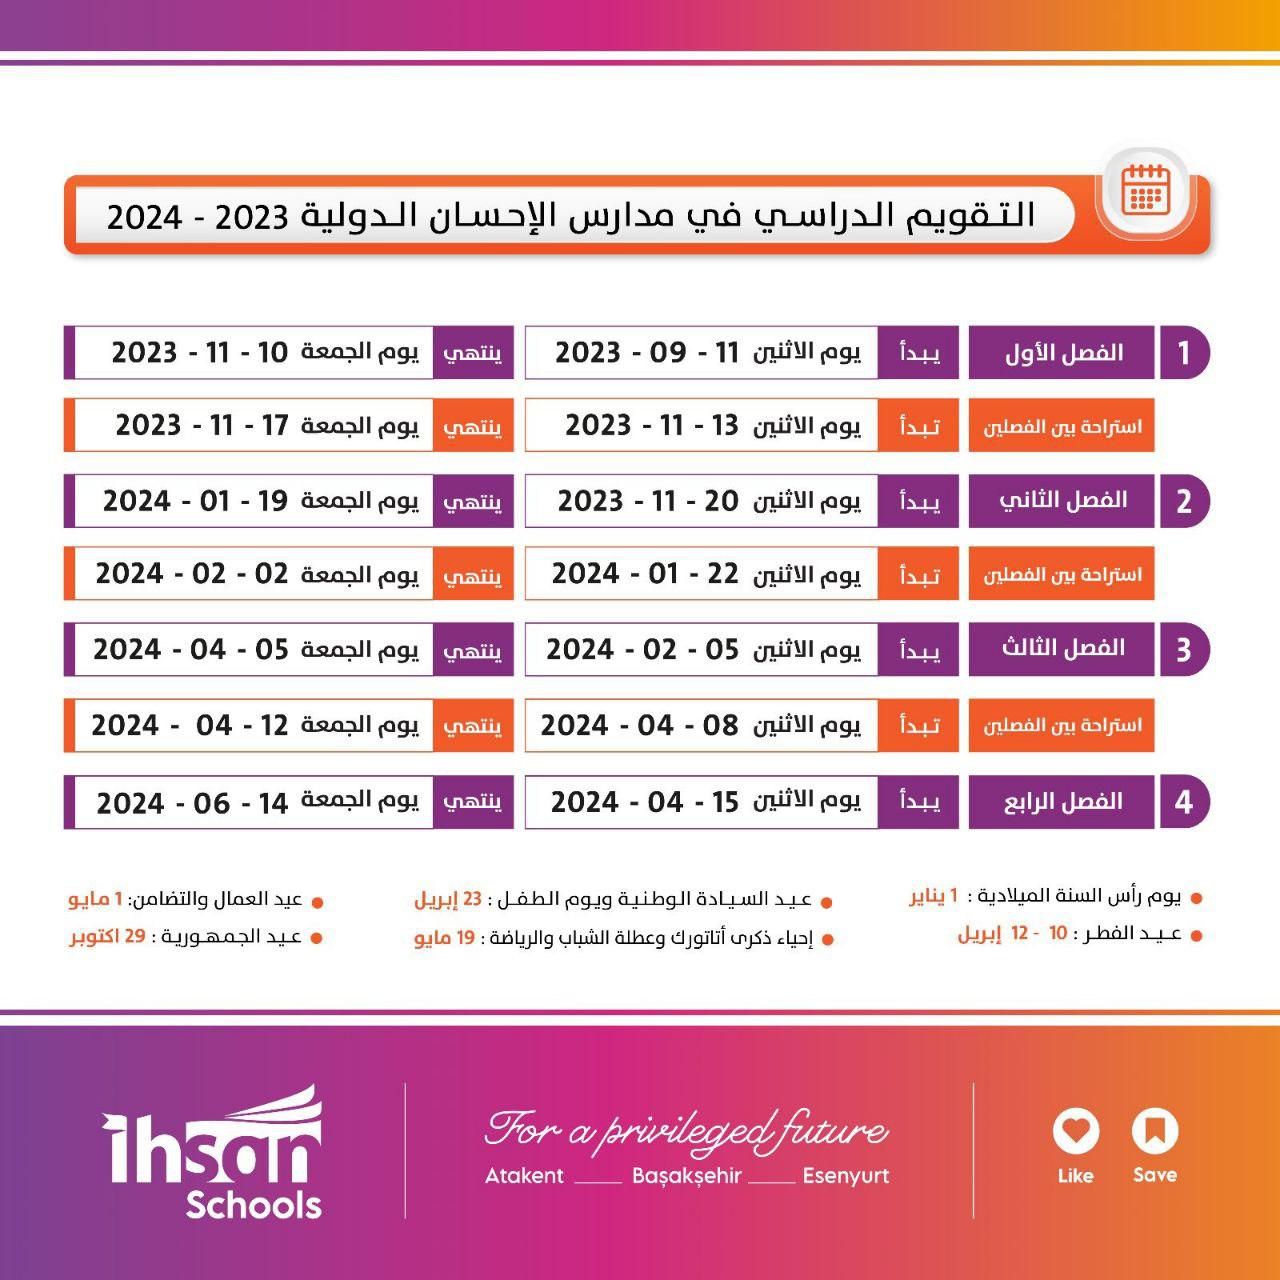 التقويم الدراسي لمدرسة الإحسان الدولية لعام 2023 - 2024